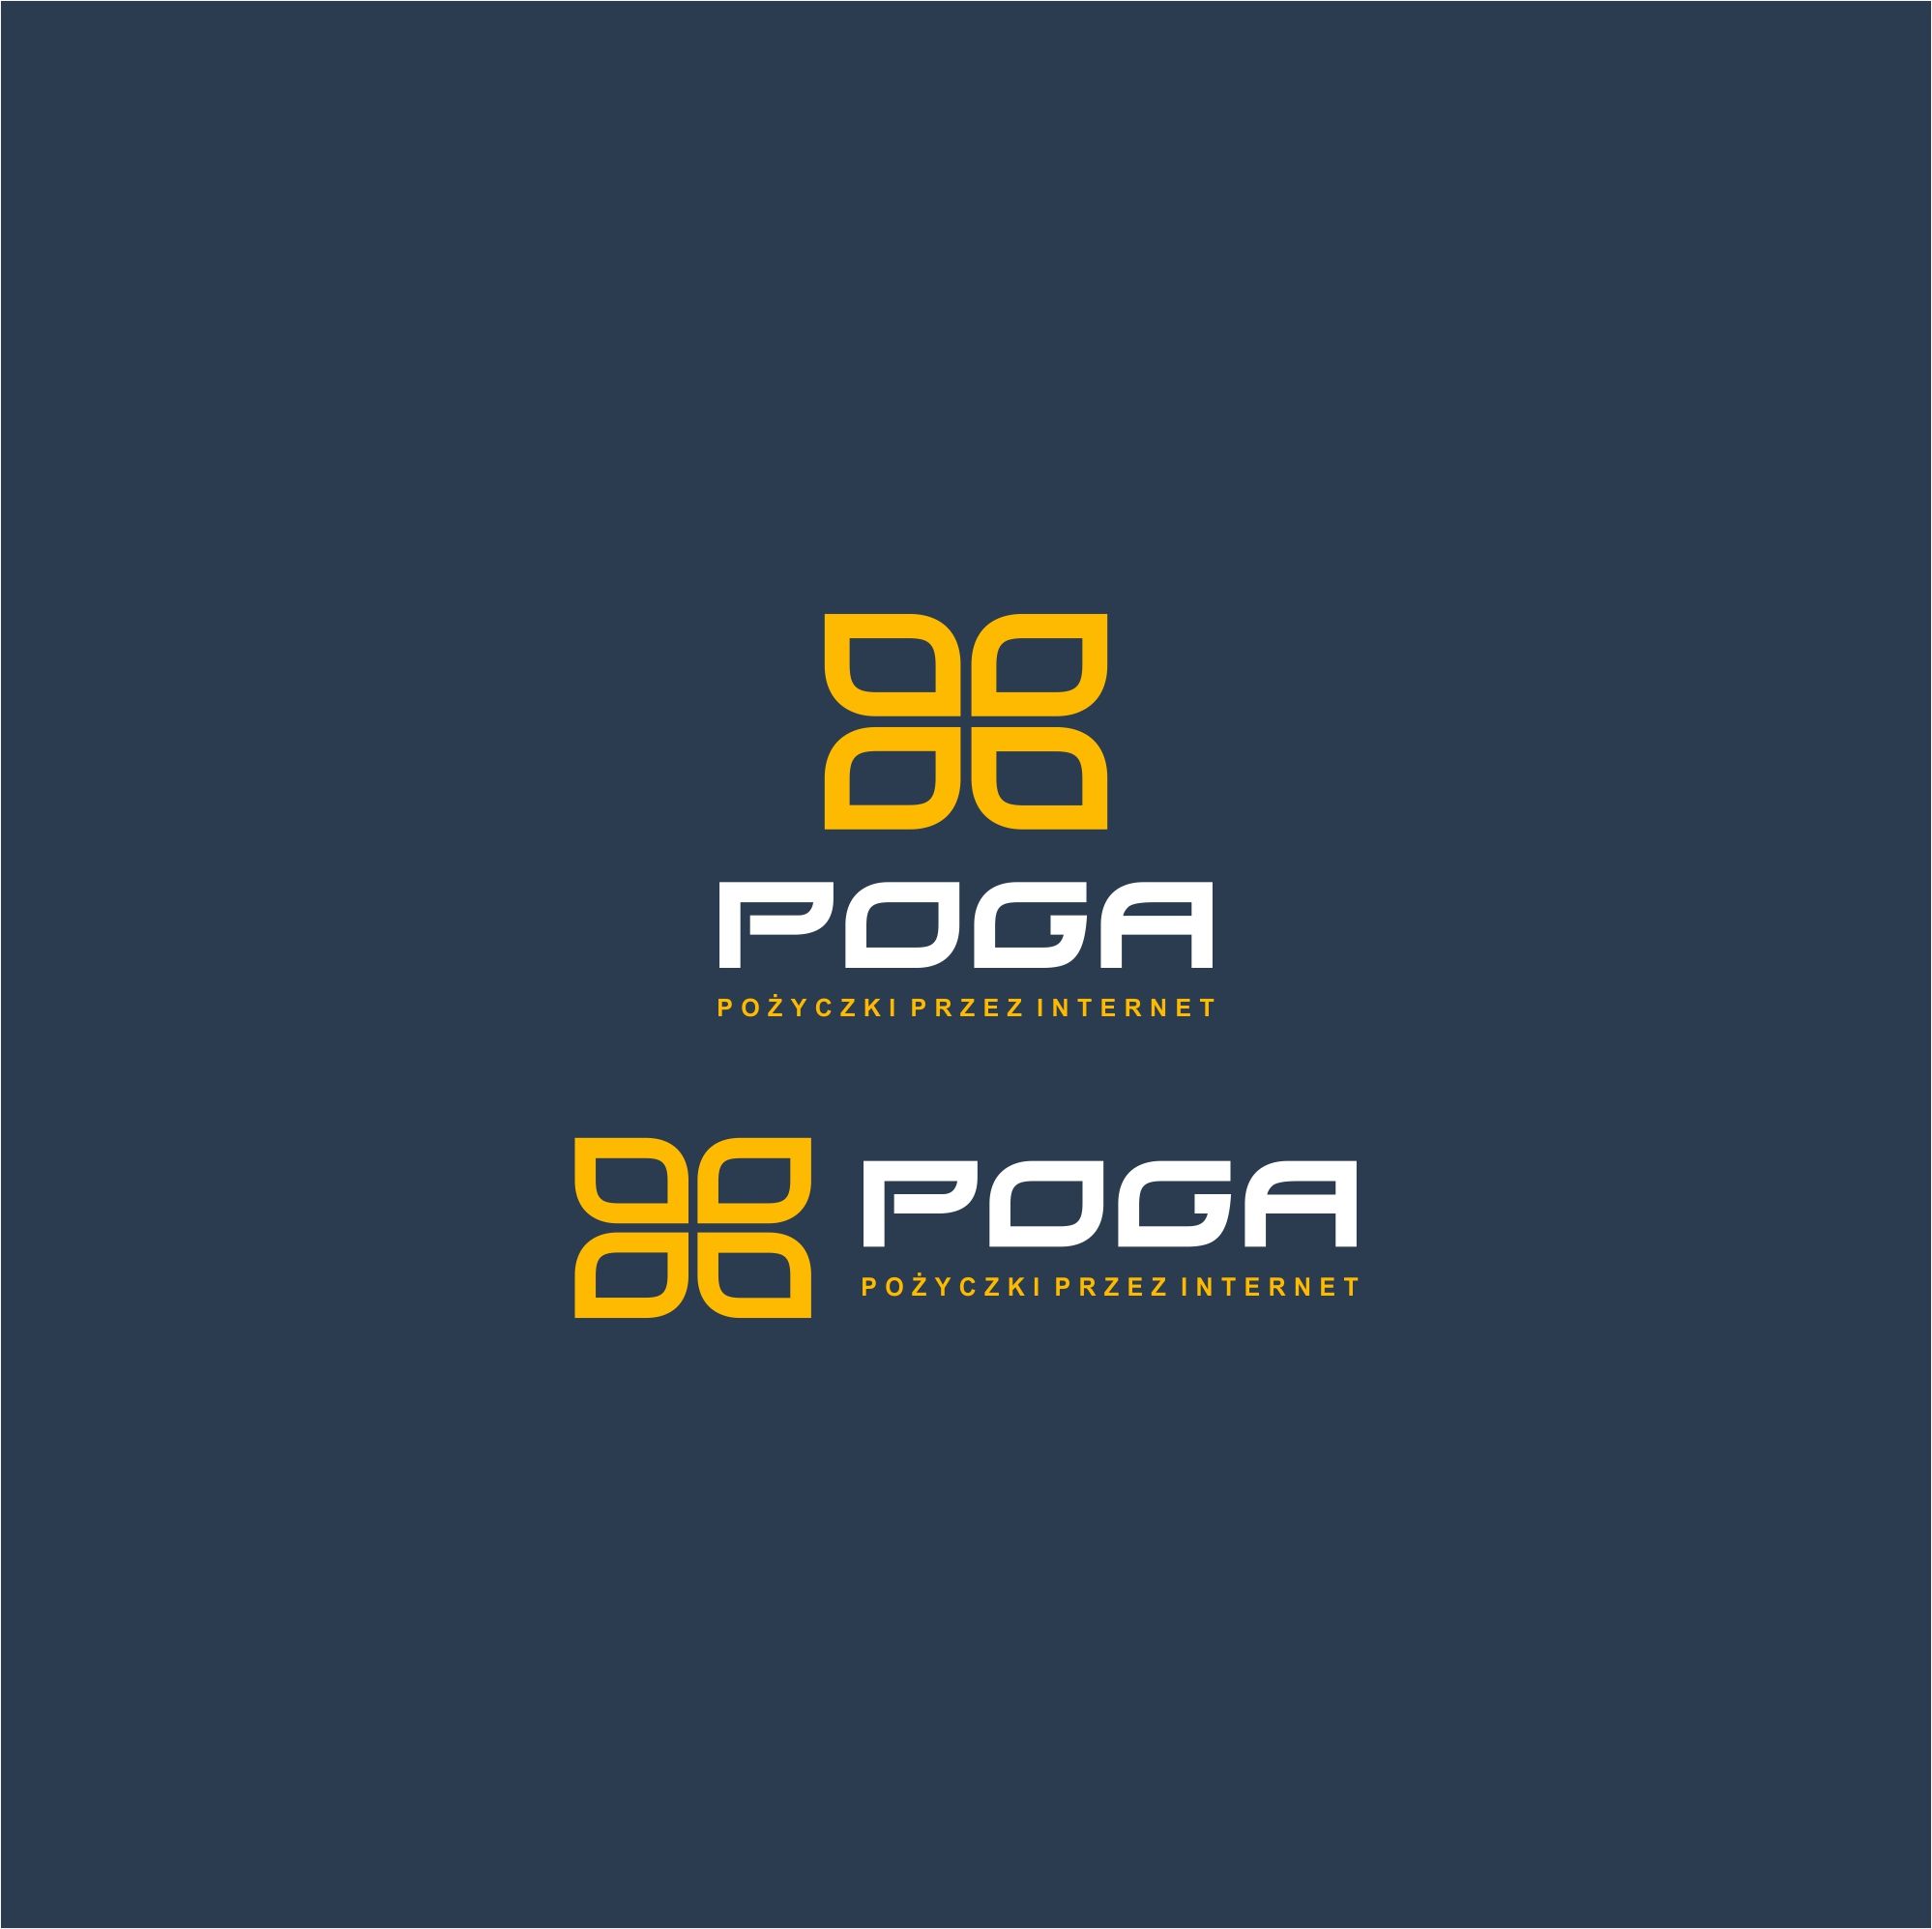 Логотип для POGA или POGA.pl - дизайнер serz4868